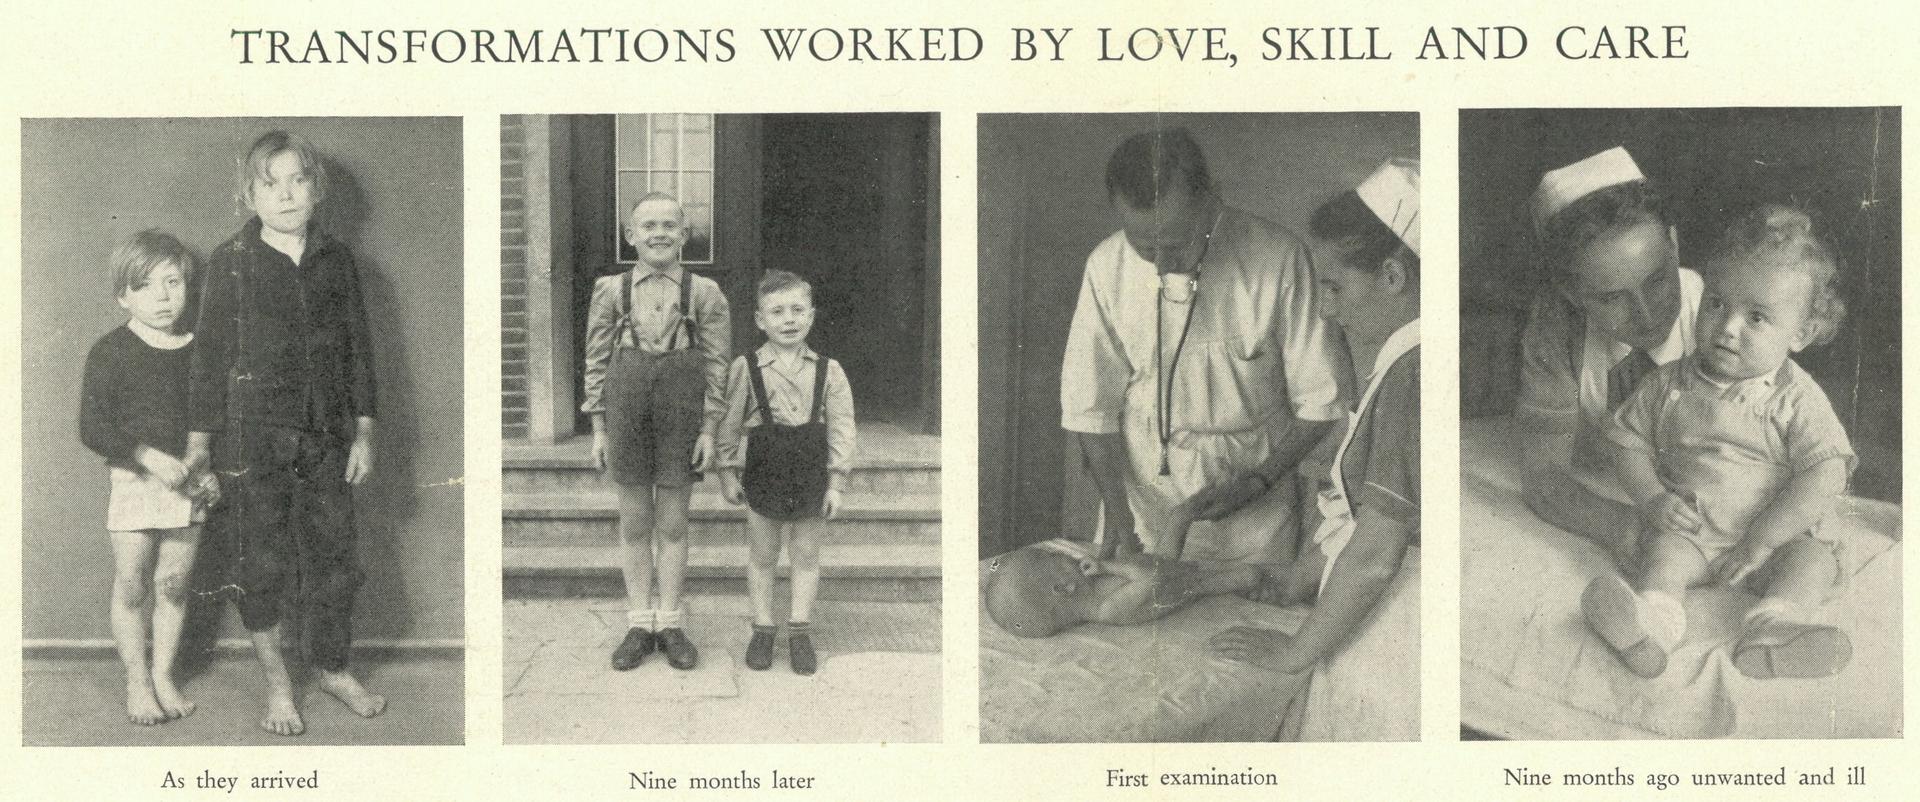 Postwar work with children 1947